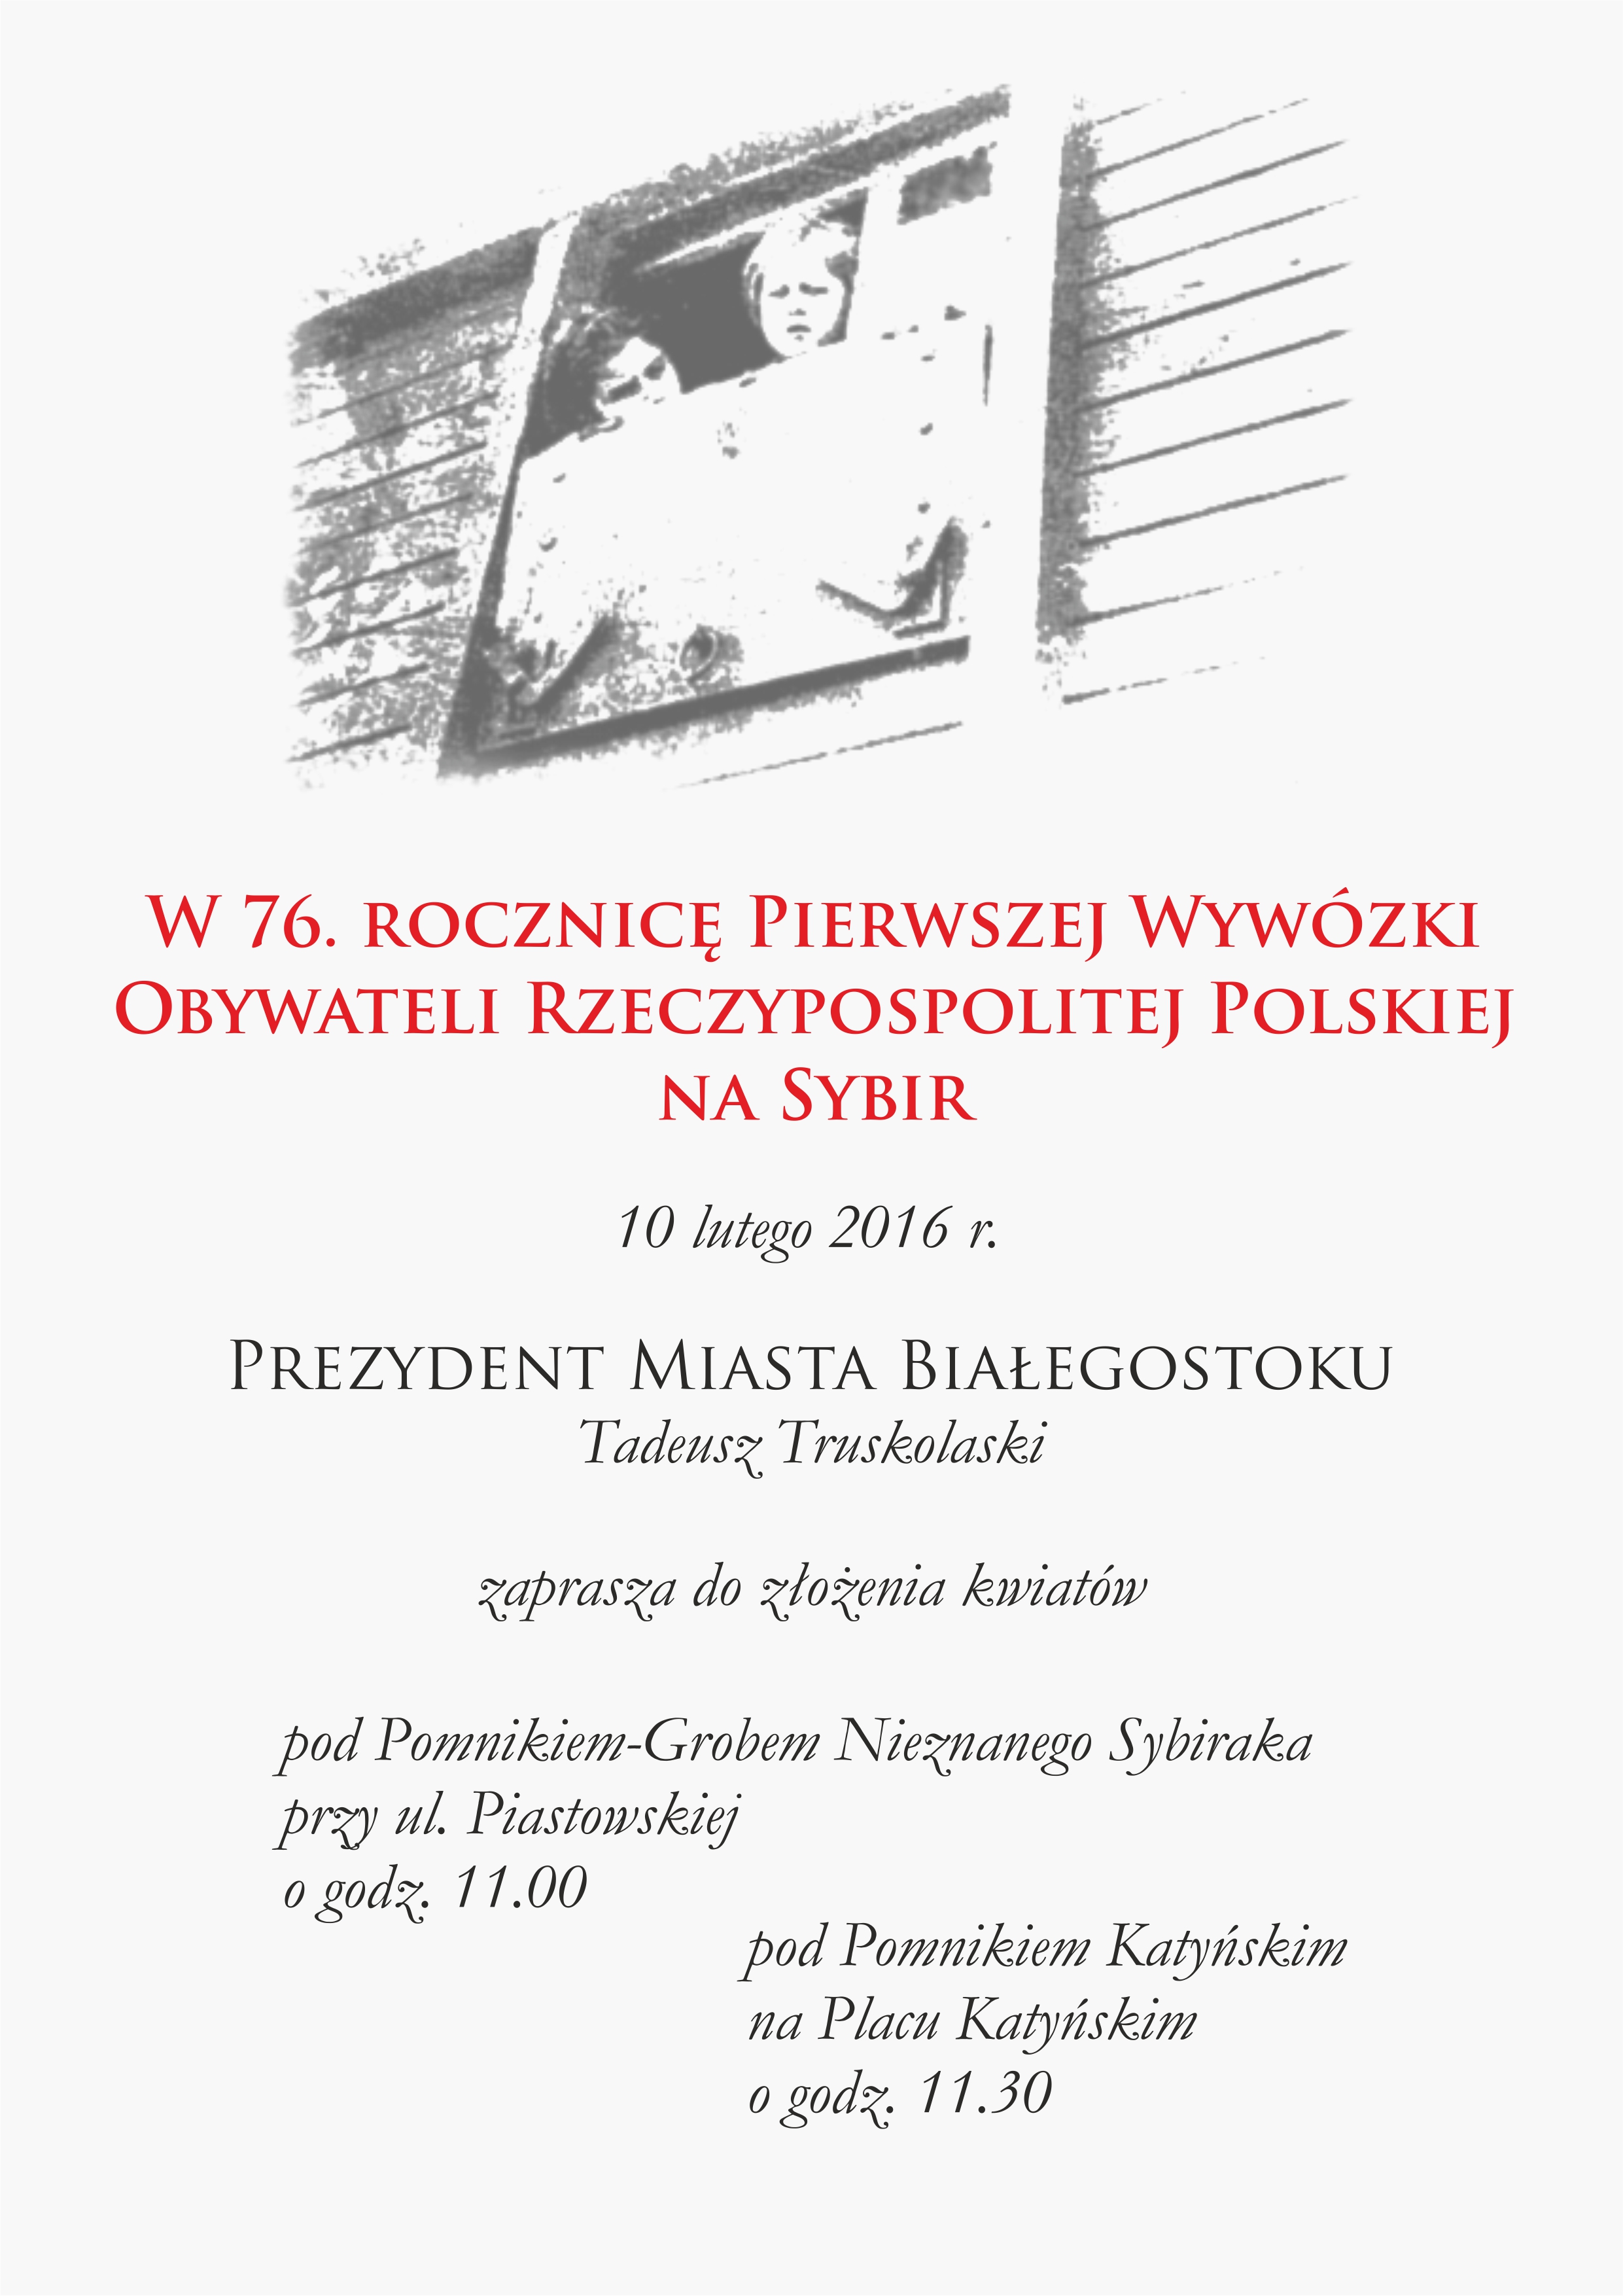 Plakat Prezydent Białegostoku zaprasza mieszkańców miasta, by wzięli udział w tej uroczystości w 76. rocznicę pierwszej wywózki na sybir